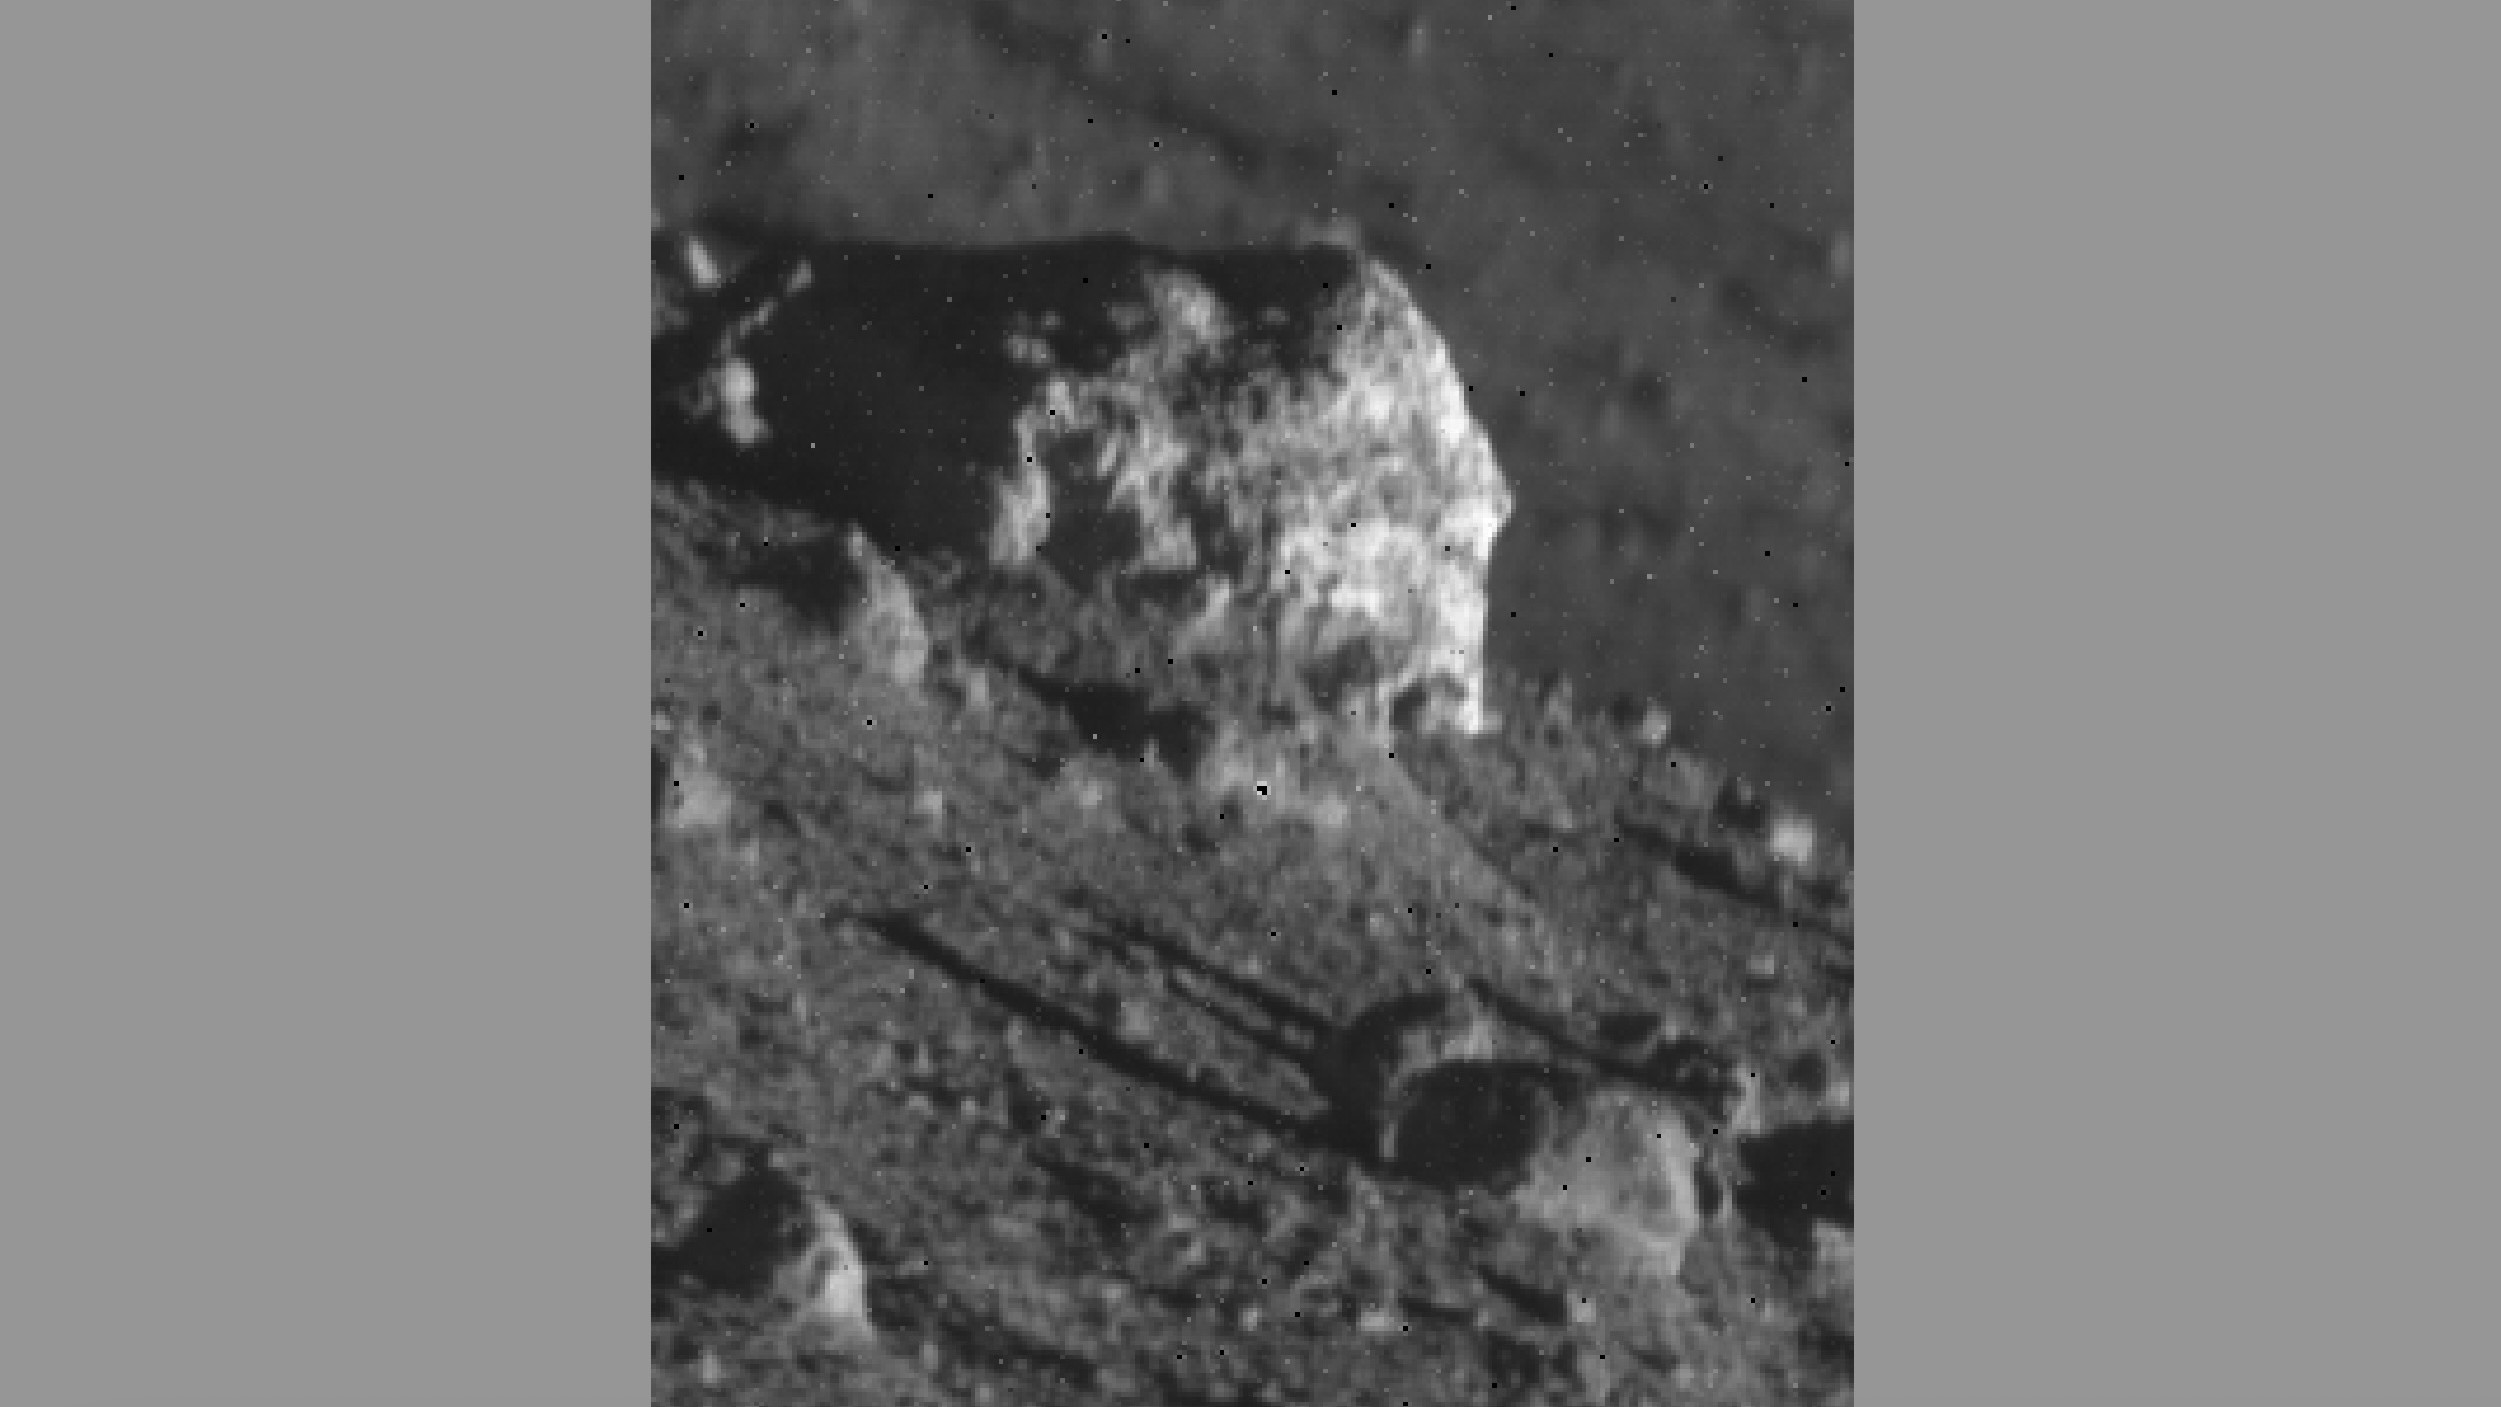 Közeli kép egy nagy szikláról a Hold felszínén, kisebb sziklákkal körülvéve.